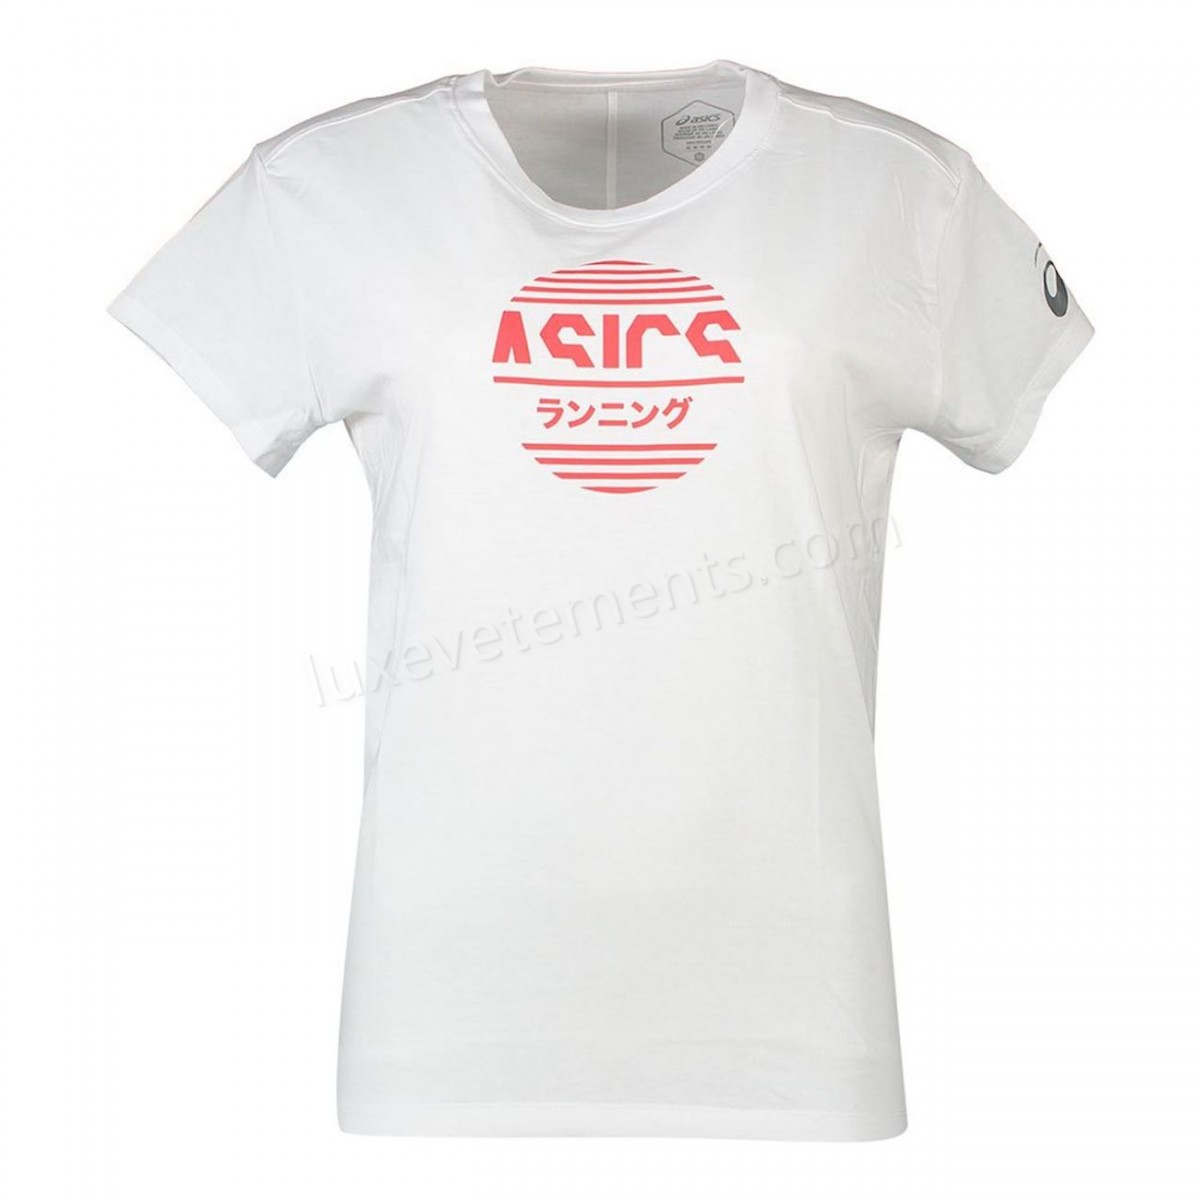 Asics-Fitness femme ASICS T-shirt femme Asics Tokyo Graphic Vente en ligne - -0